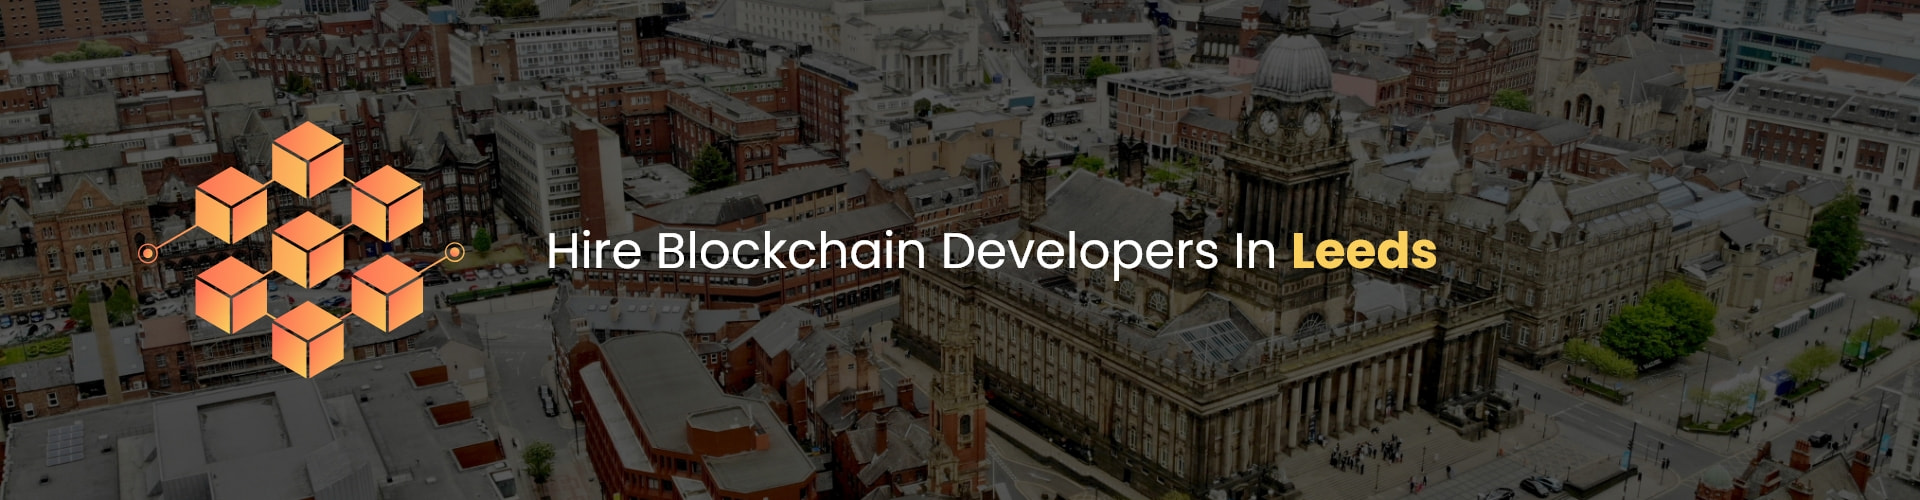 hire blockchain developers in leeds